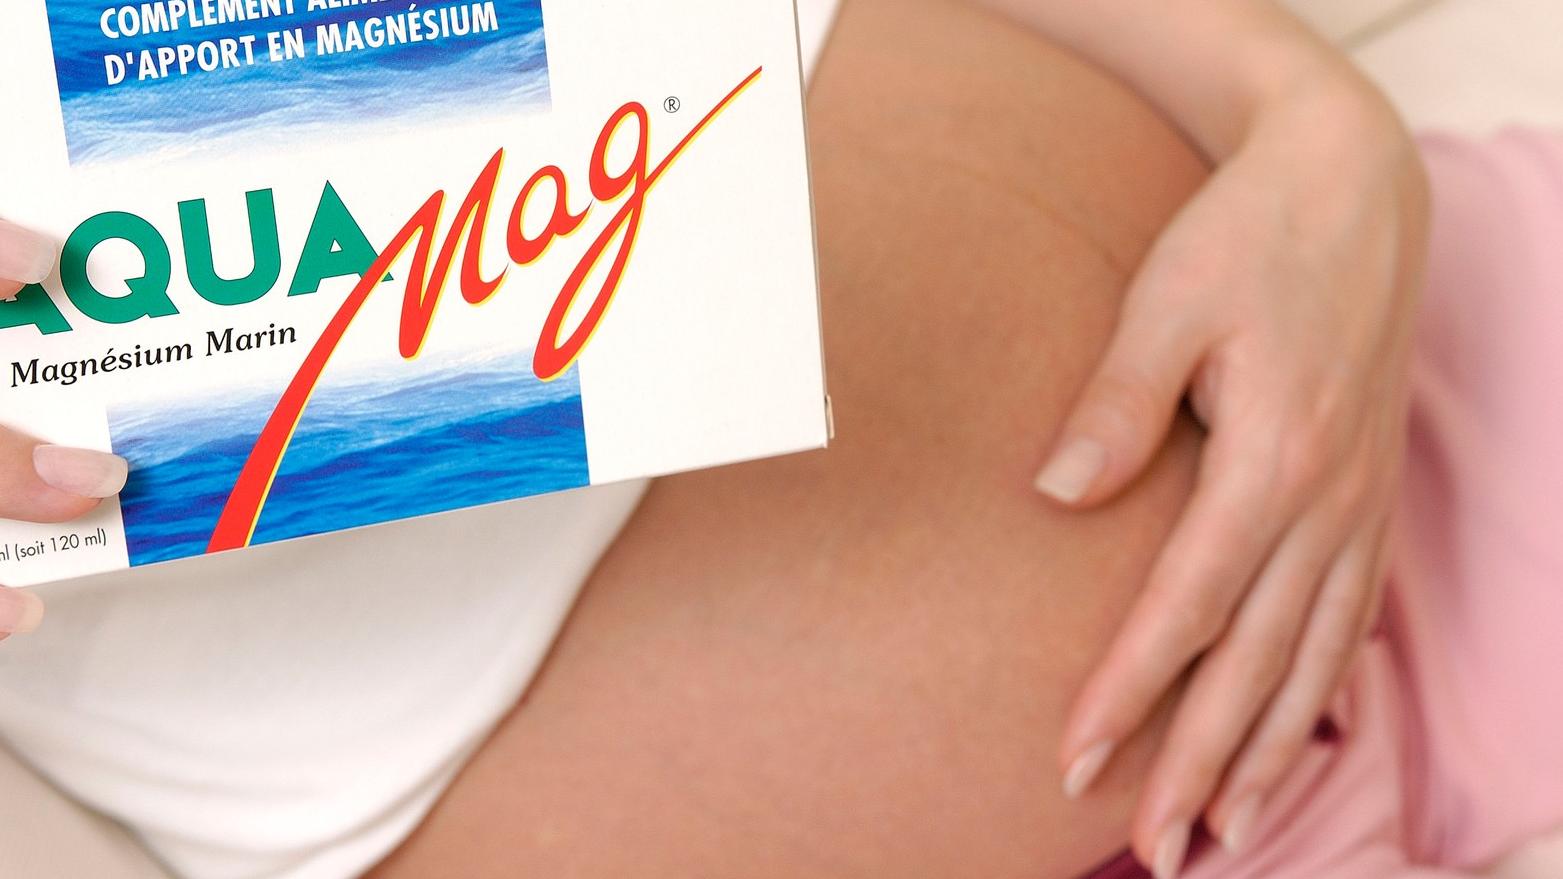 Magnézium v tehotenstve: Všetky užitočné informácie a rady lekára |  Najmama.sk